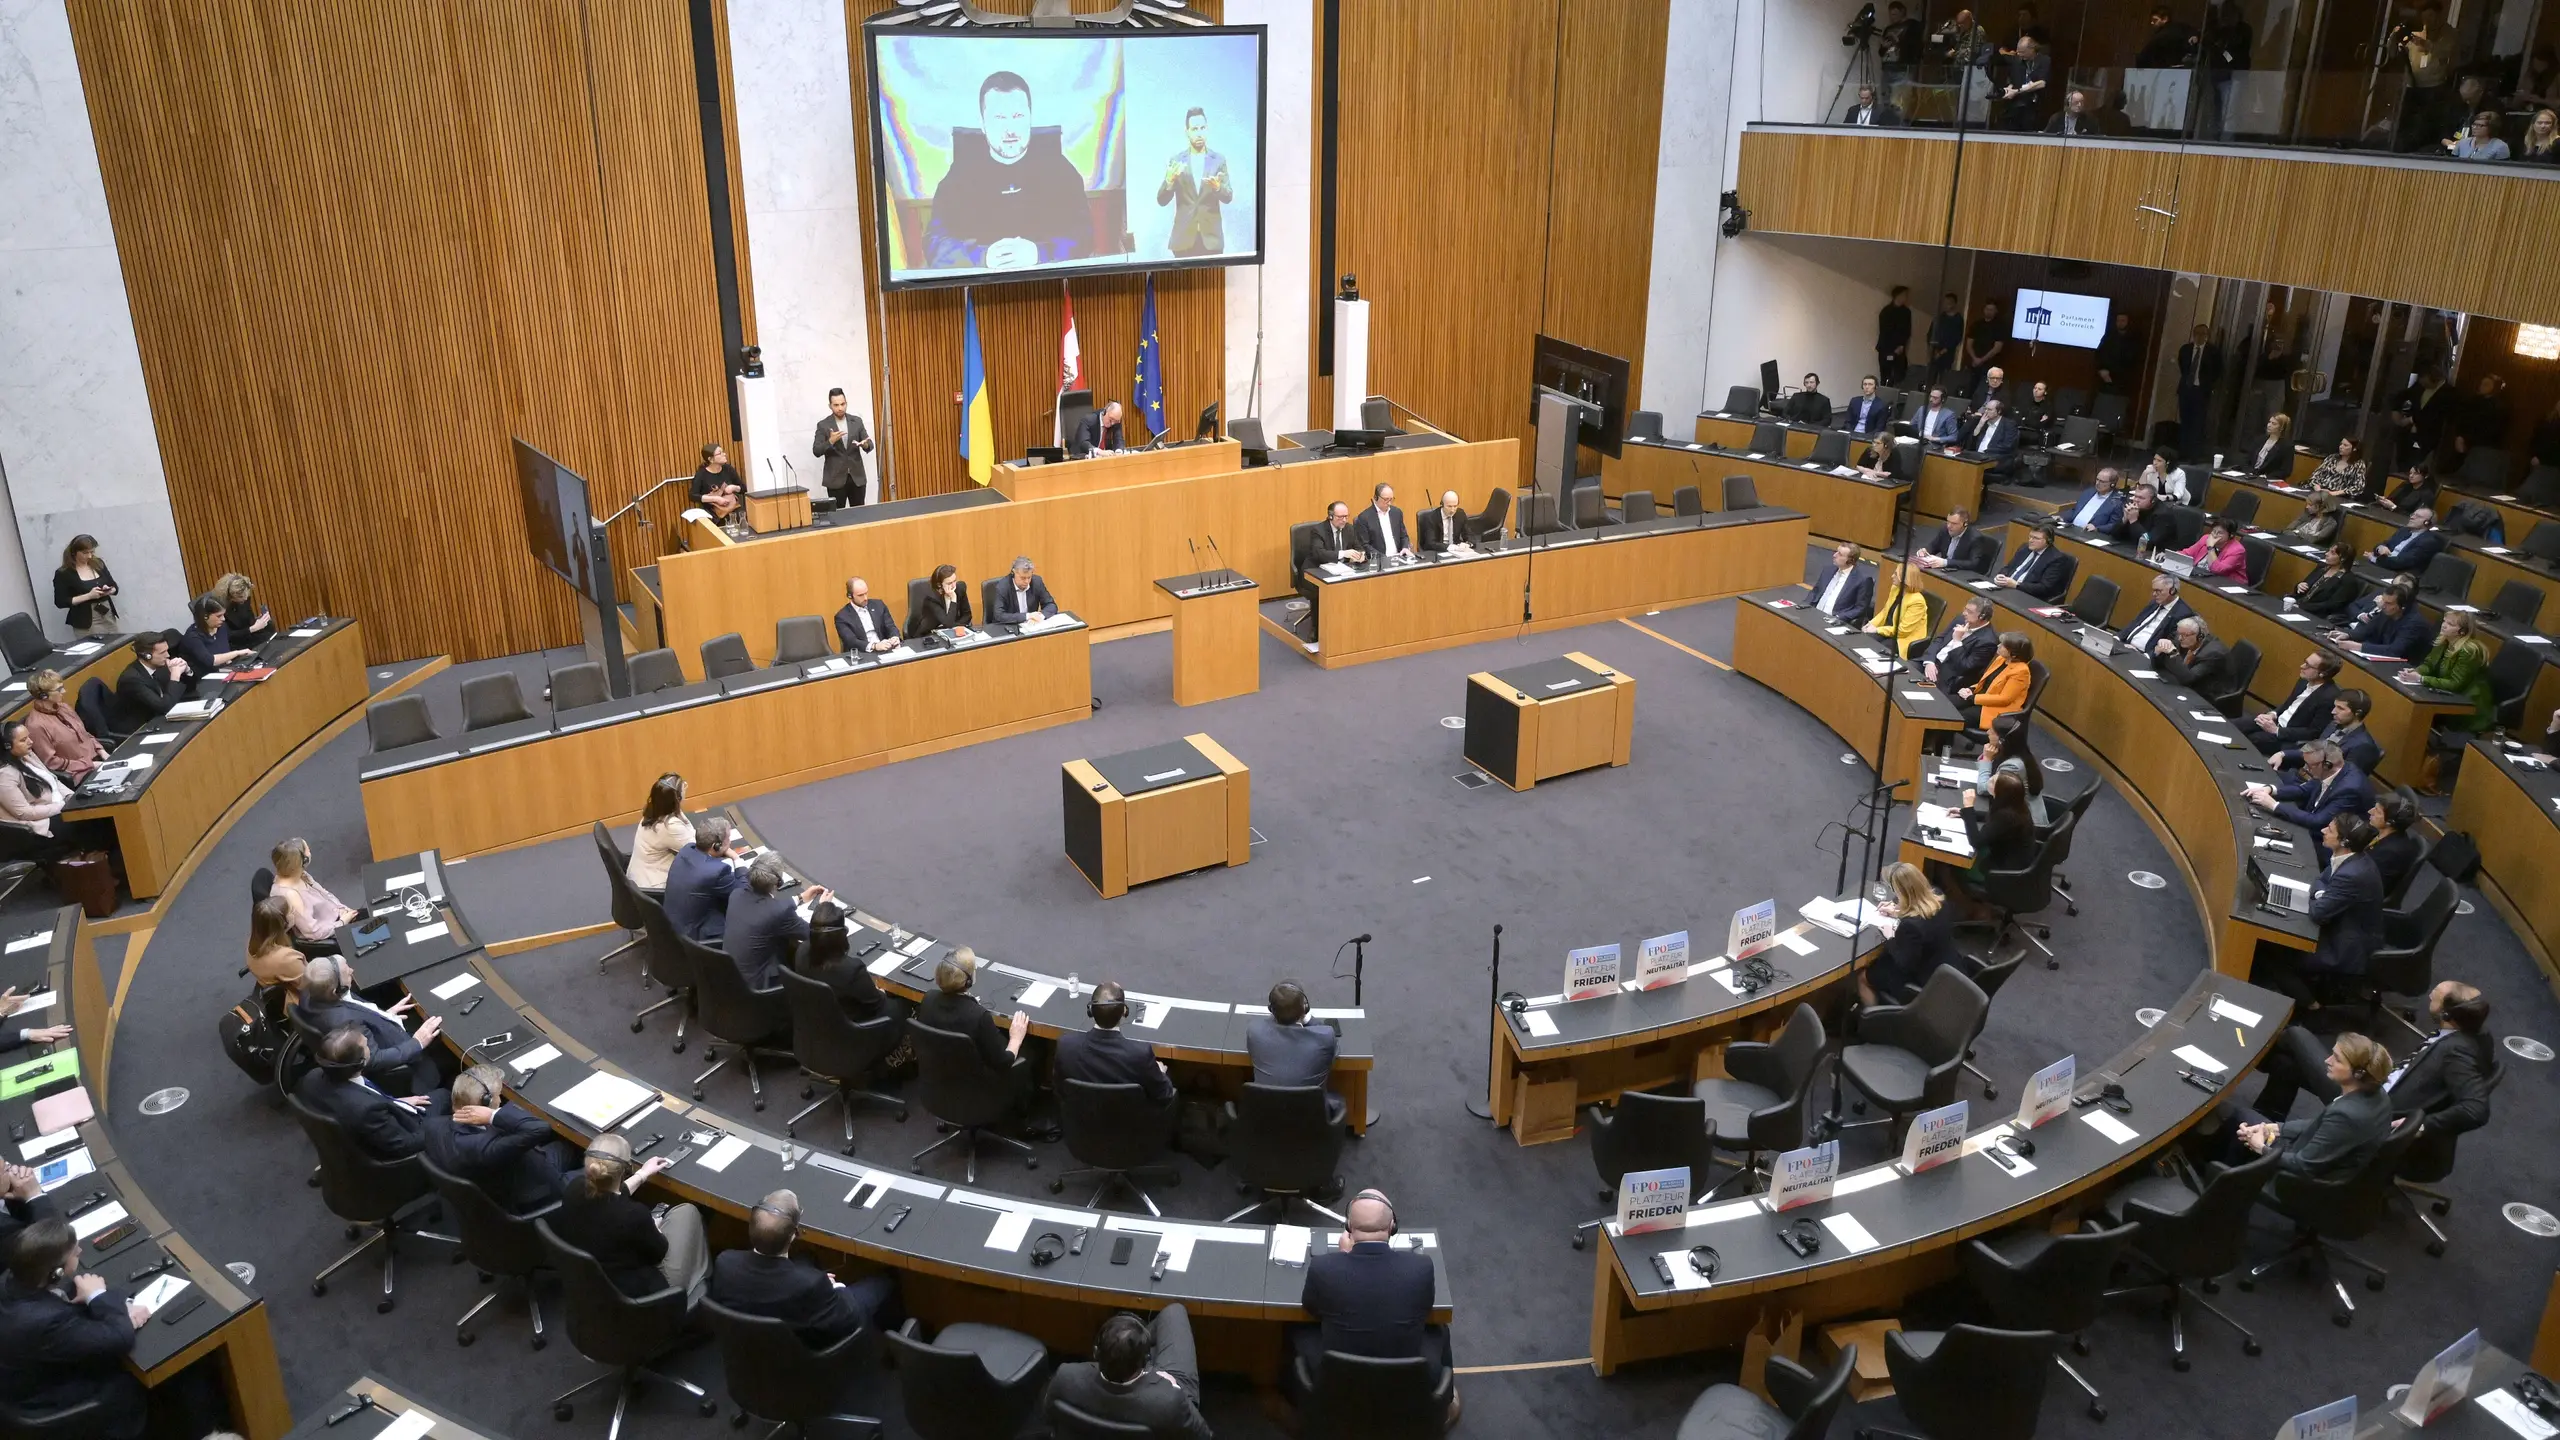 Ausgedünnte Sitzreihen bei der Übertragung der Videoansprache des ukrainischen Präsidenten Wolodymyr Selenskyj am 30. März 2023 im Parlament in Wien.